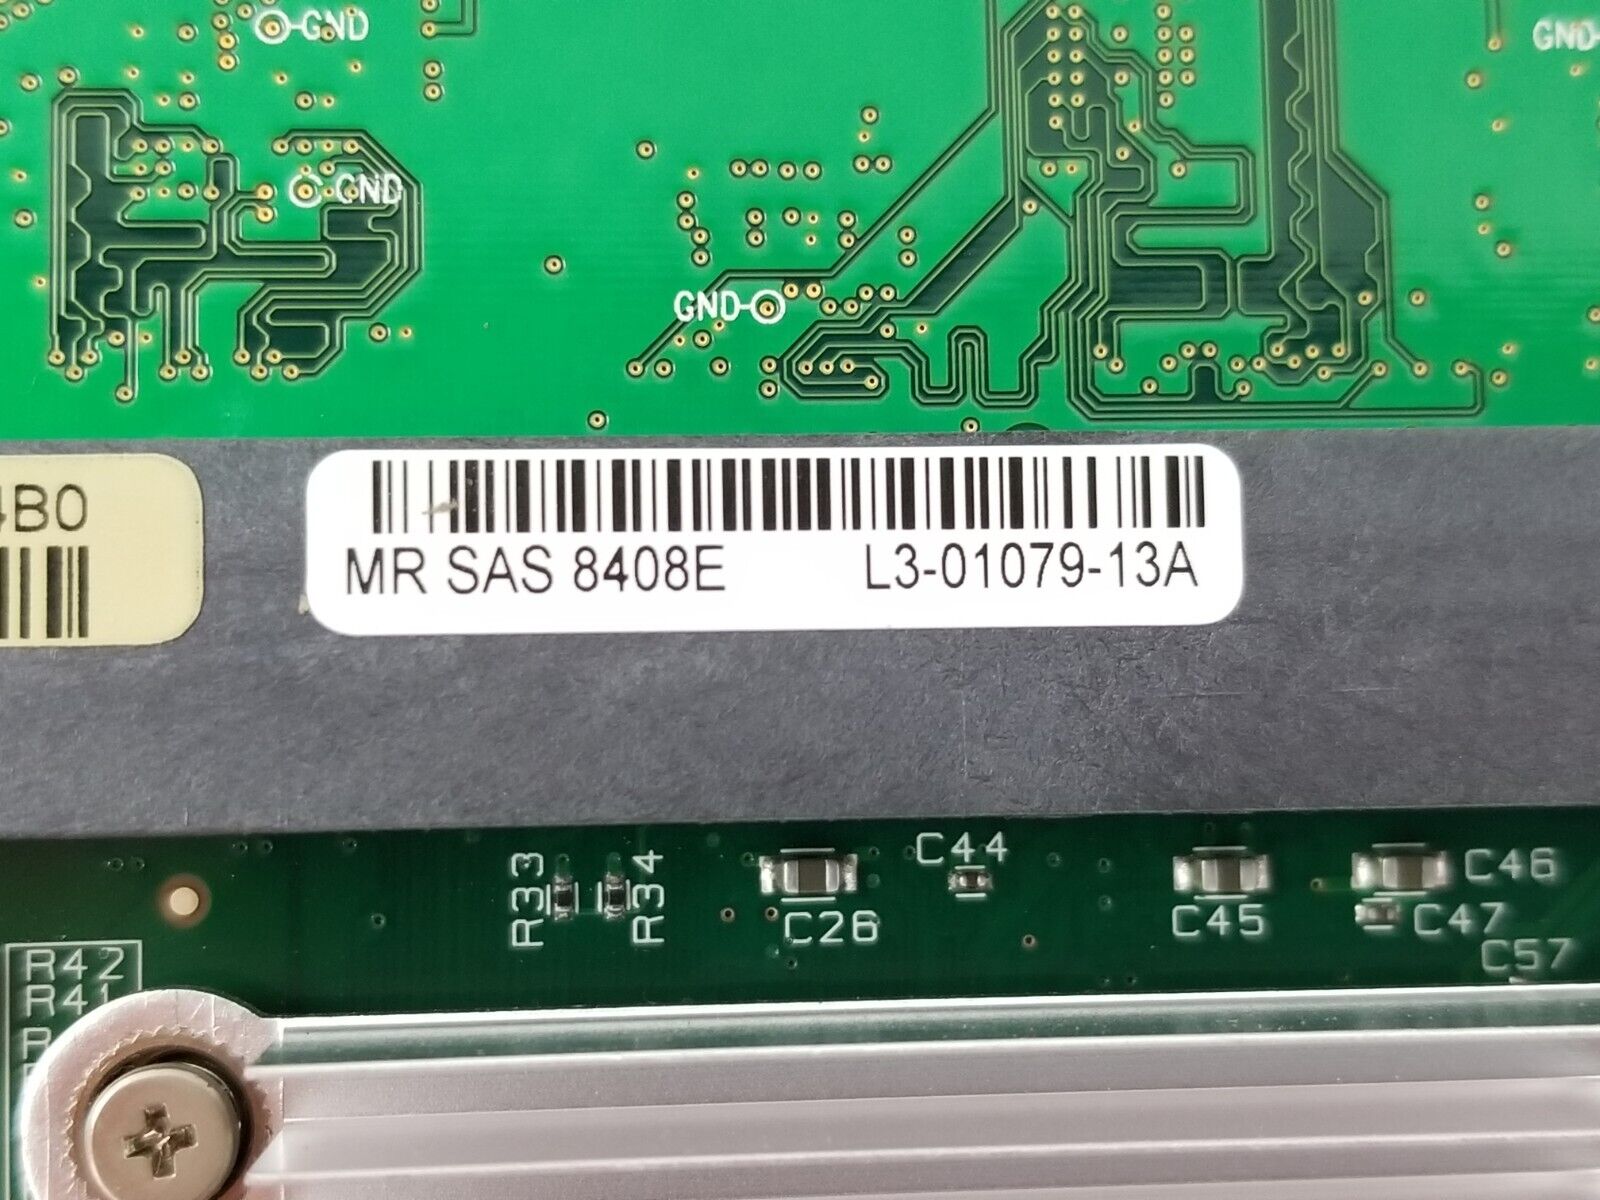 LSI SAS 8408e SAS RAID Controller Card D29815-151 DDR2 L3-01079-13A